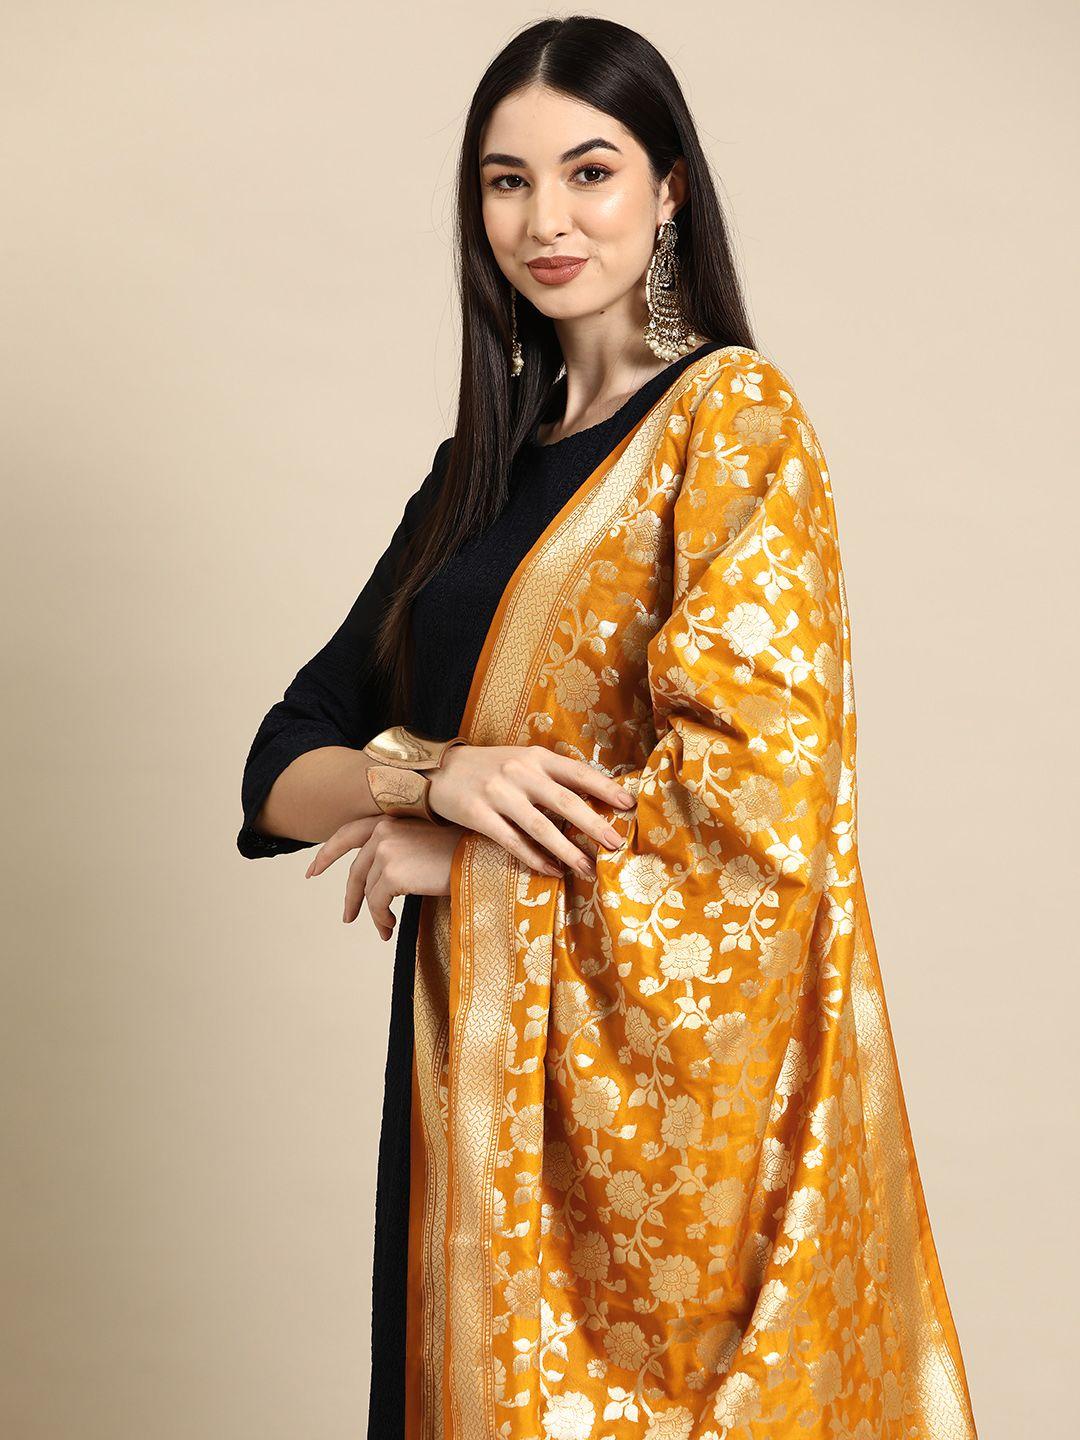 banarasi style woven design art silk dupatta with zari